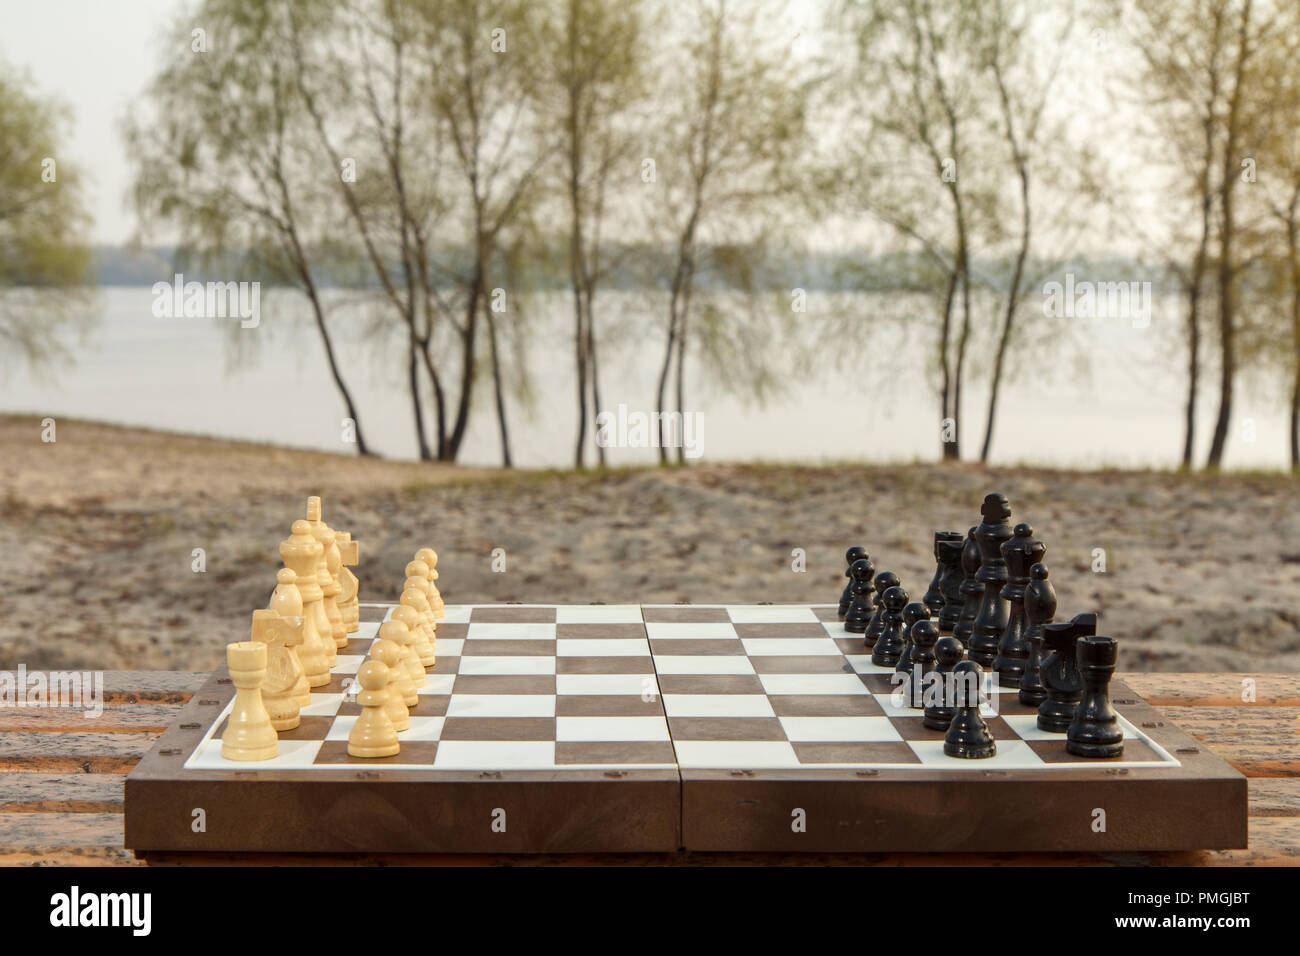 Conseil d'échecs avec pièces d'échecs sur River Embankment. Jeu d'échecs avec des pièces d'échecs Banque D'Images